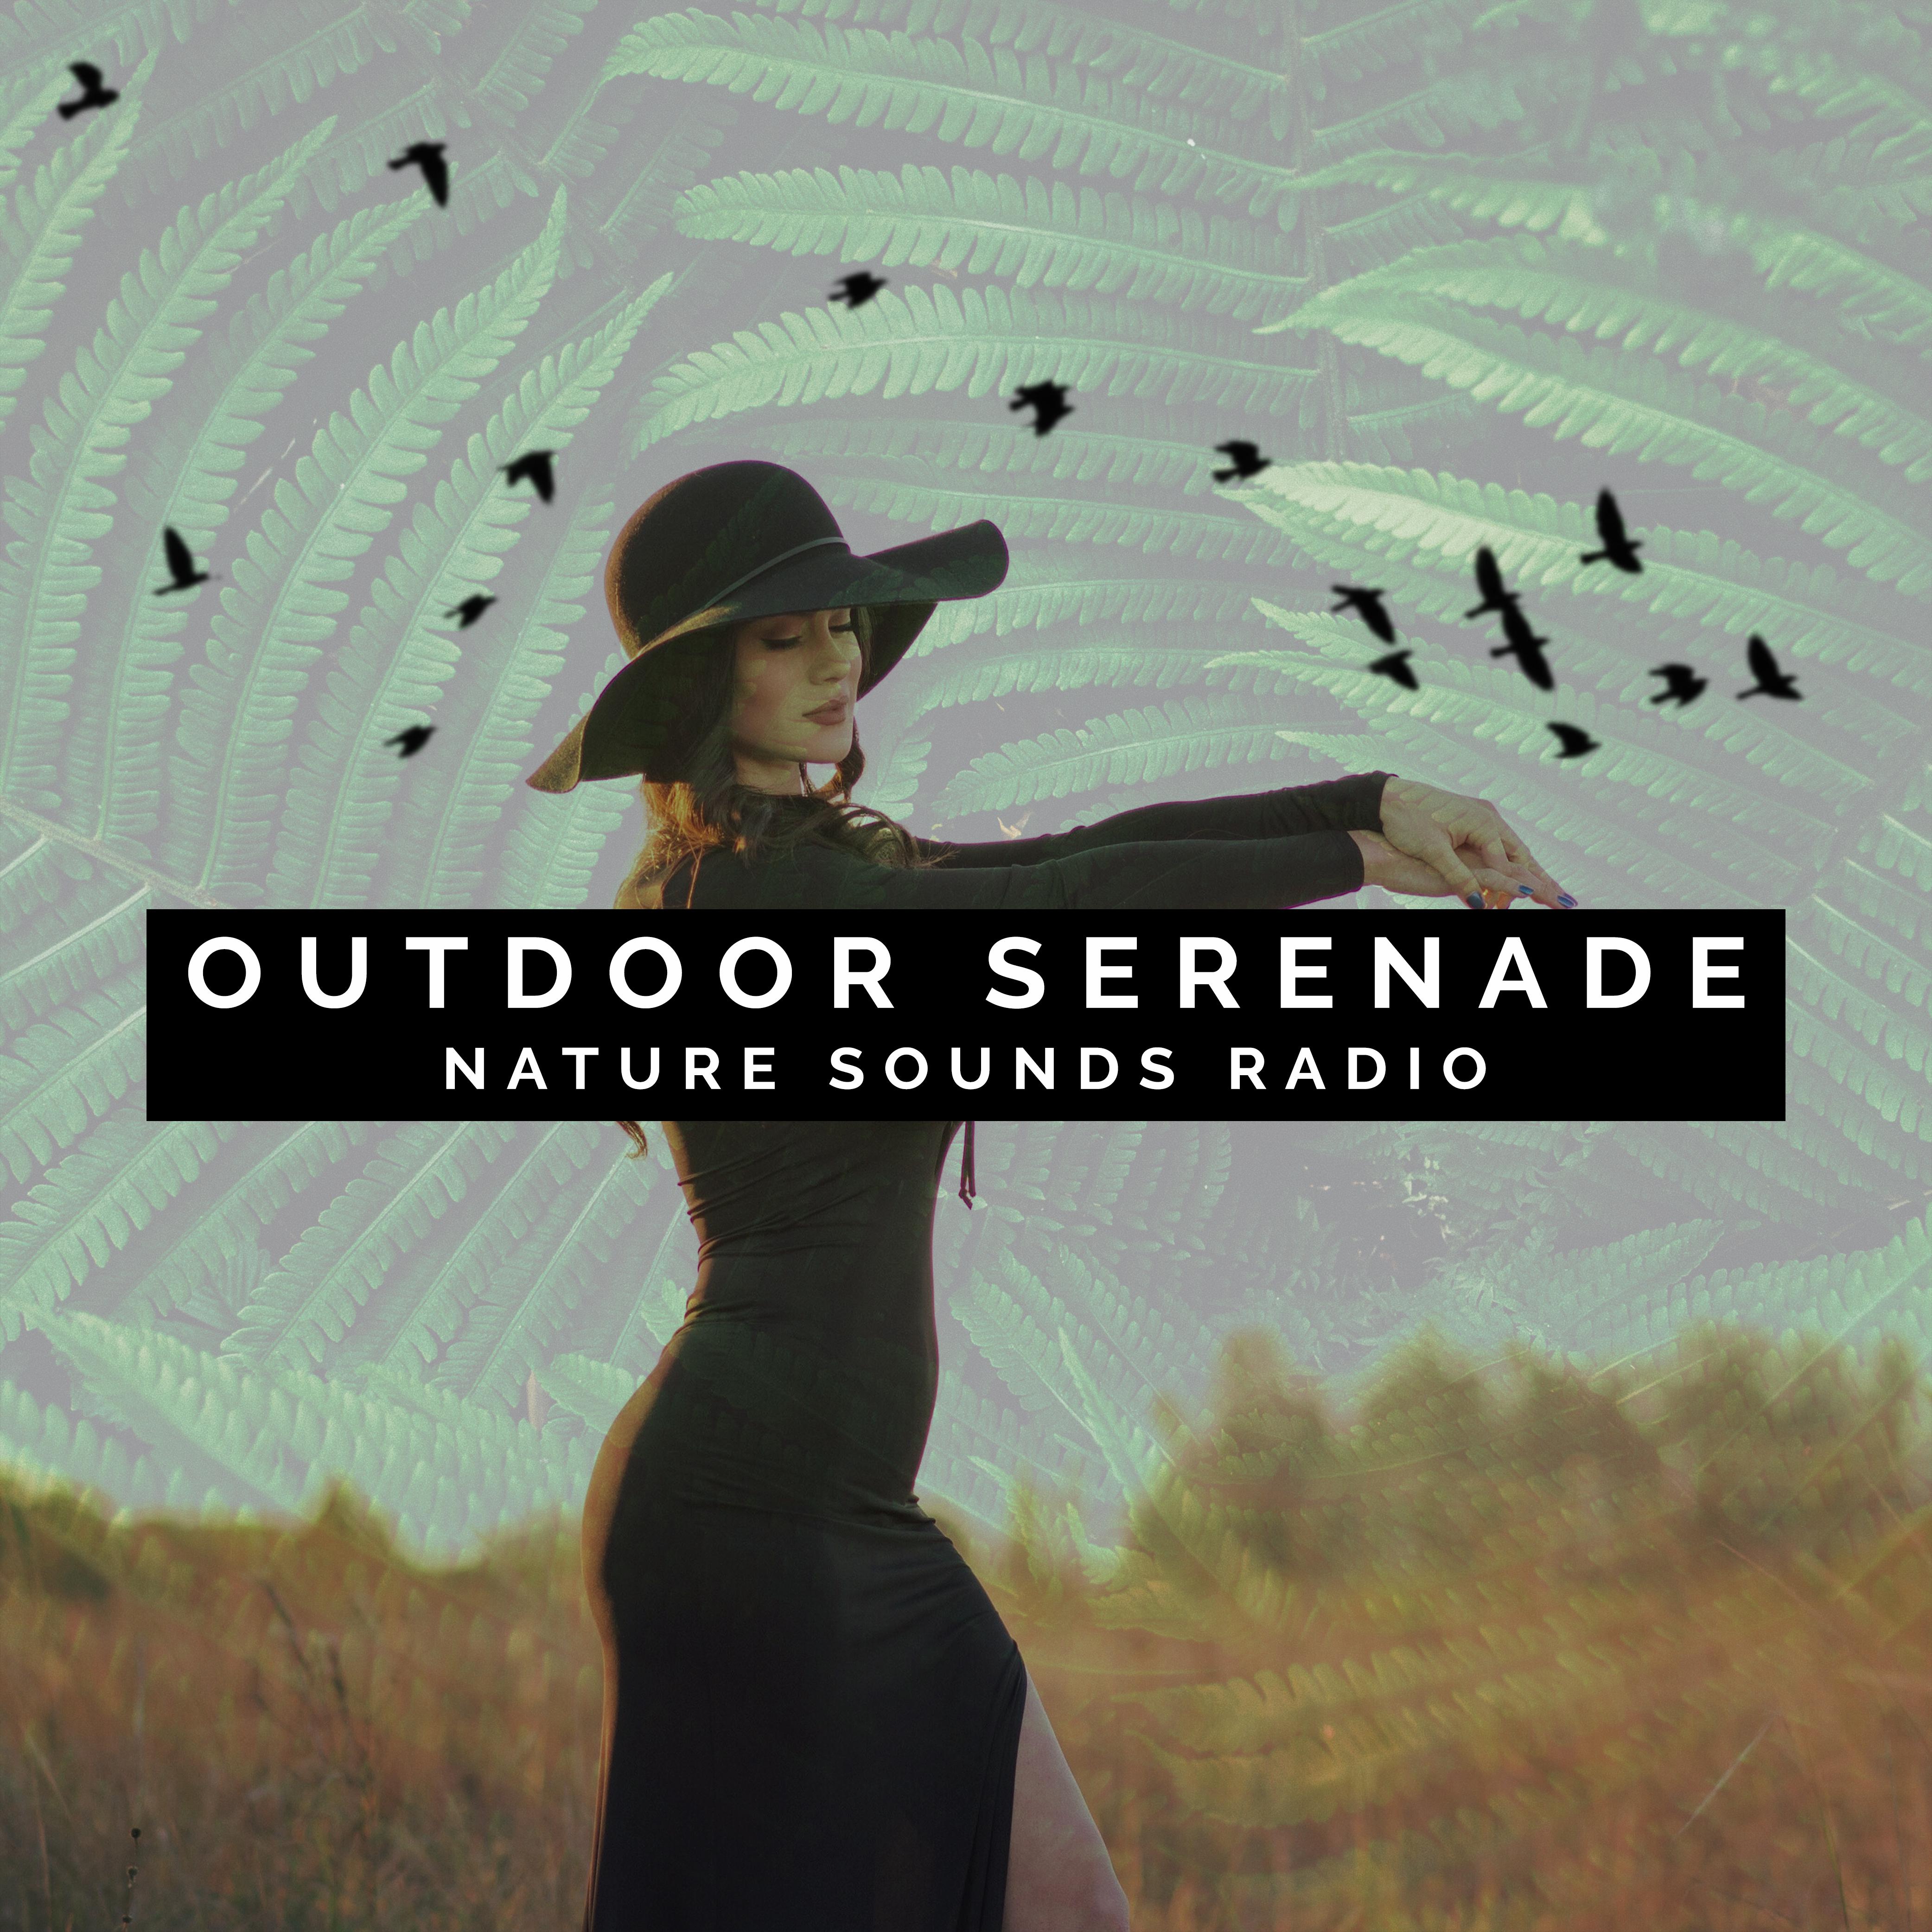 Outdoor Serenade